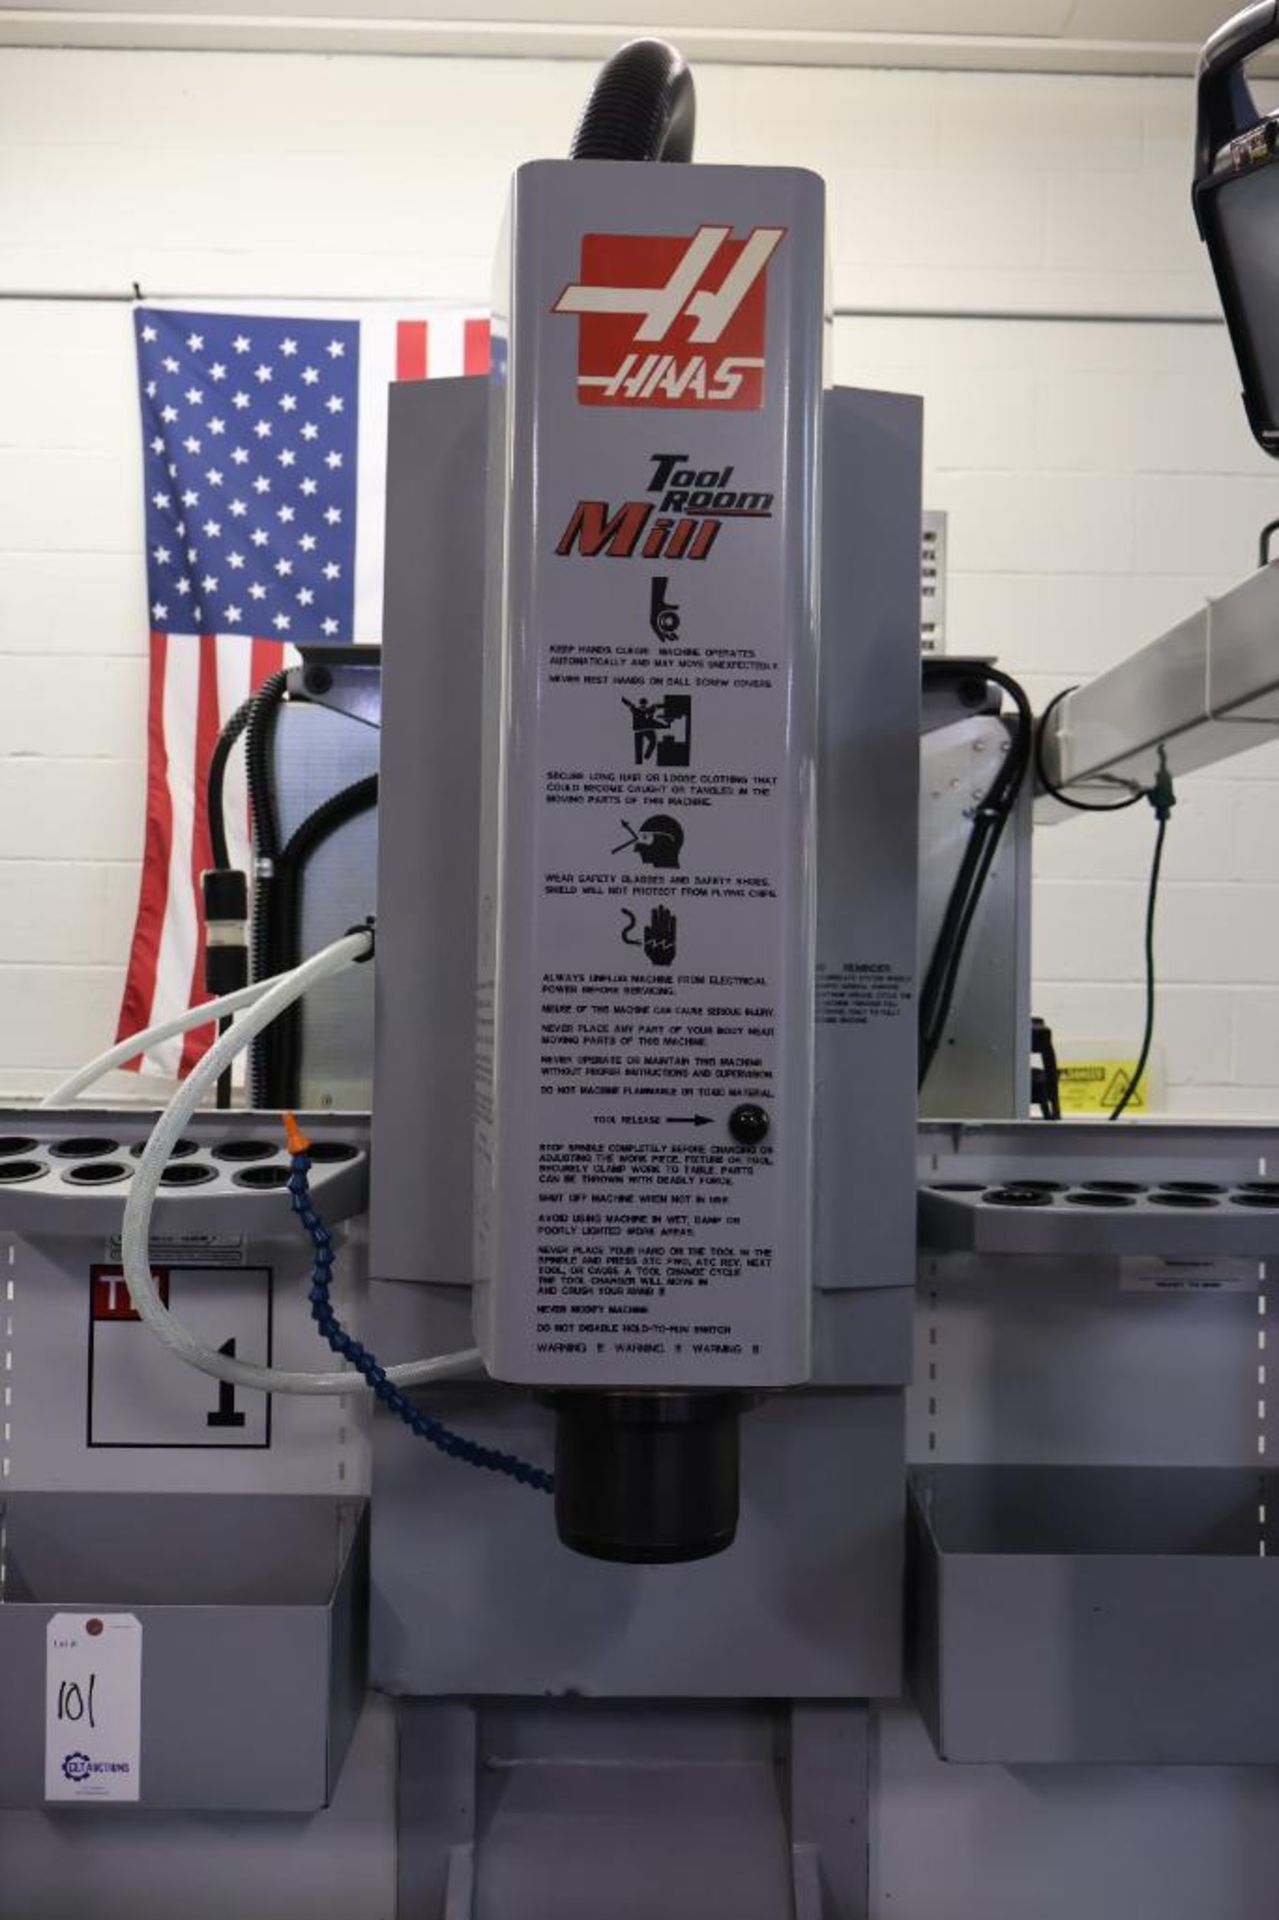 Haas TM-1 tool room milling machine - Image 6 of 23